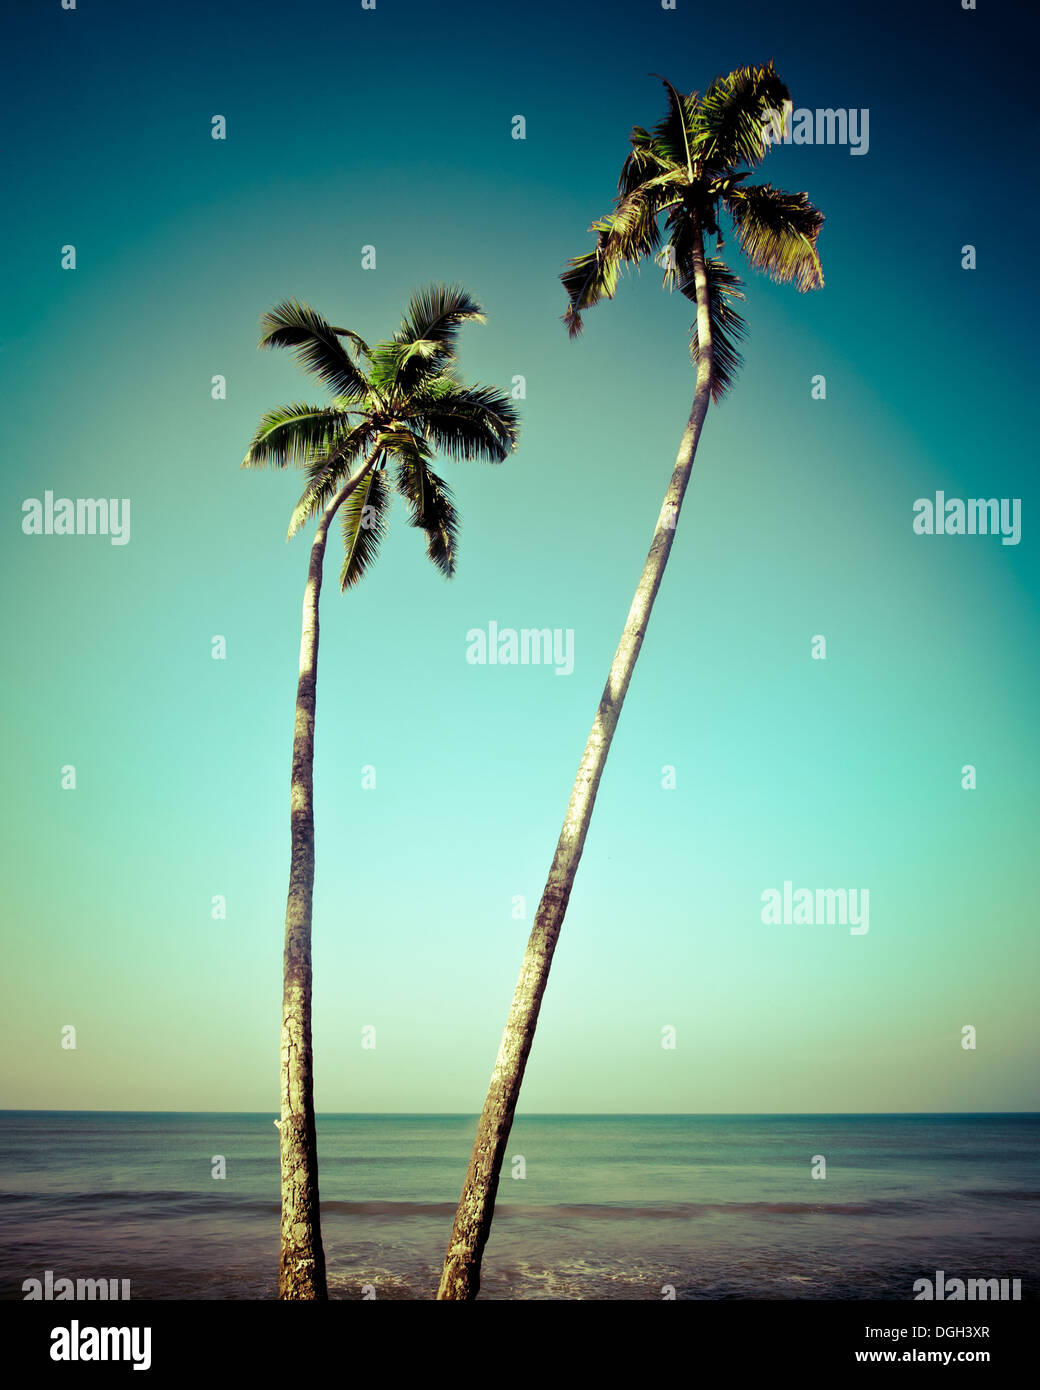 Bellissimo paesaggio tropicale con vista oceano e palme sotto il cielo blu. Immagine in stile vintage. India Foto Stock